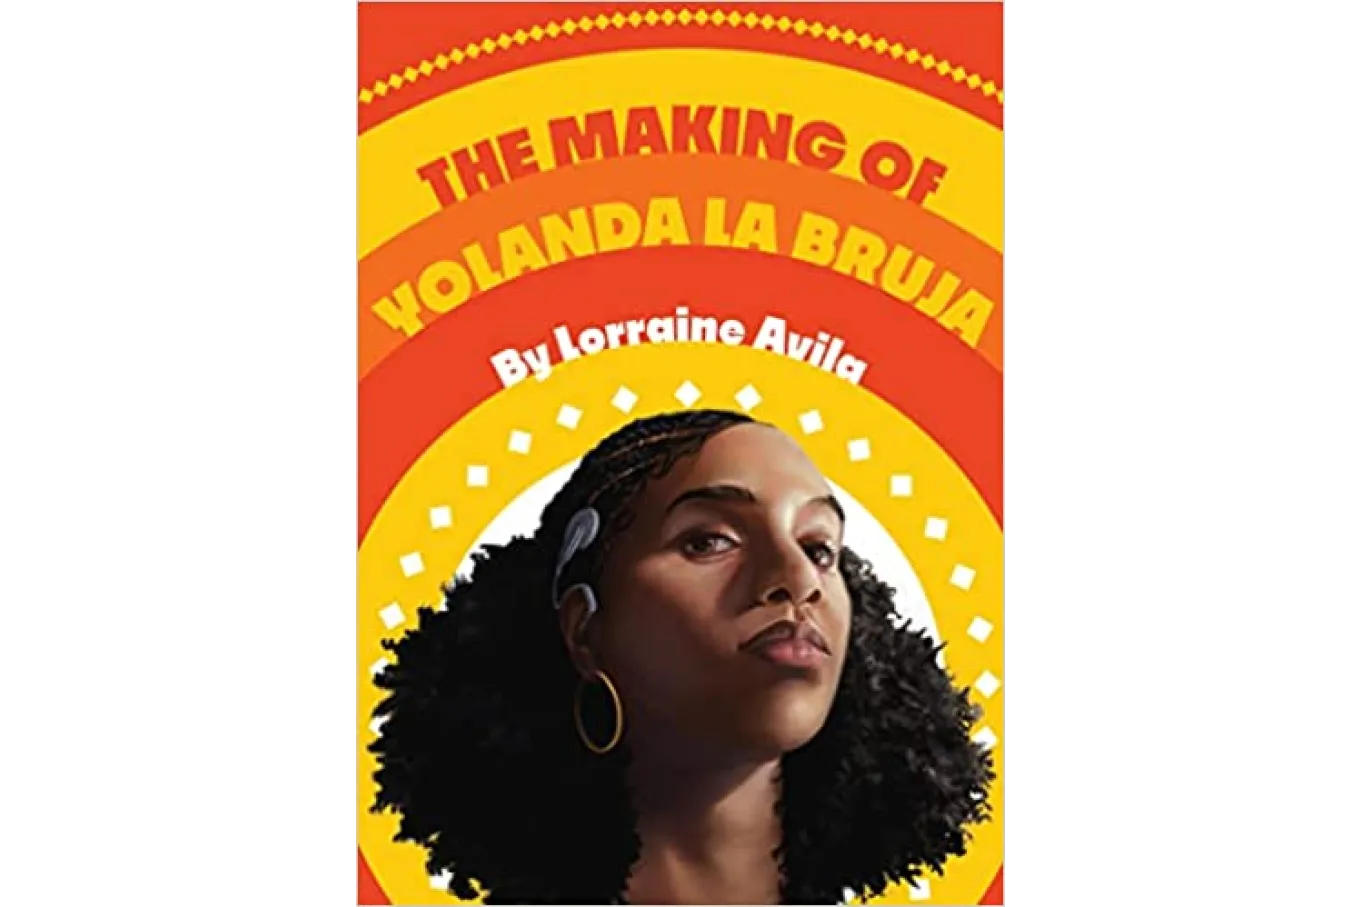 Cover of The Making of Yolanda La Bruja